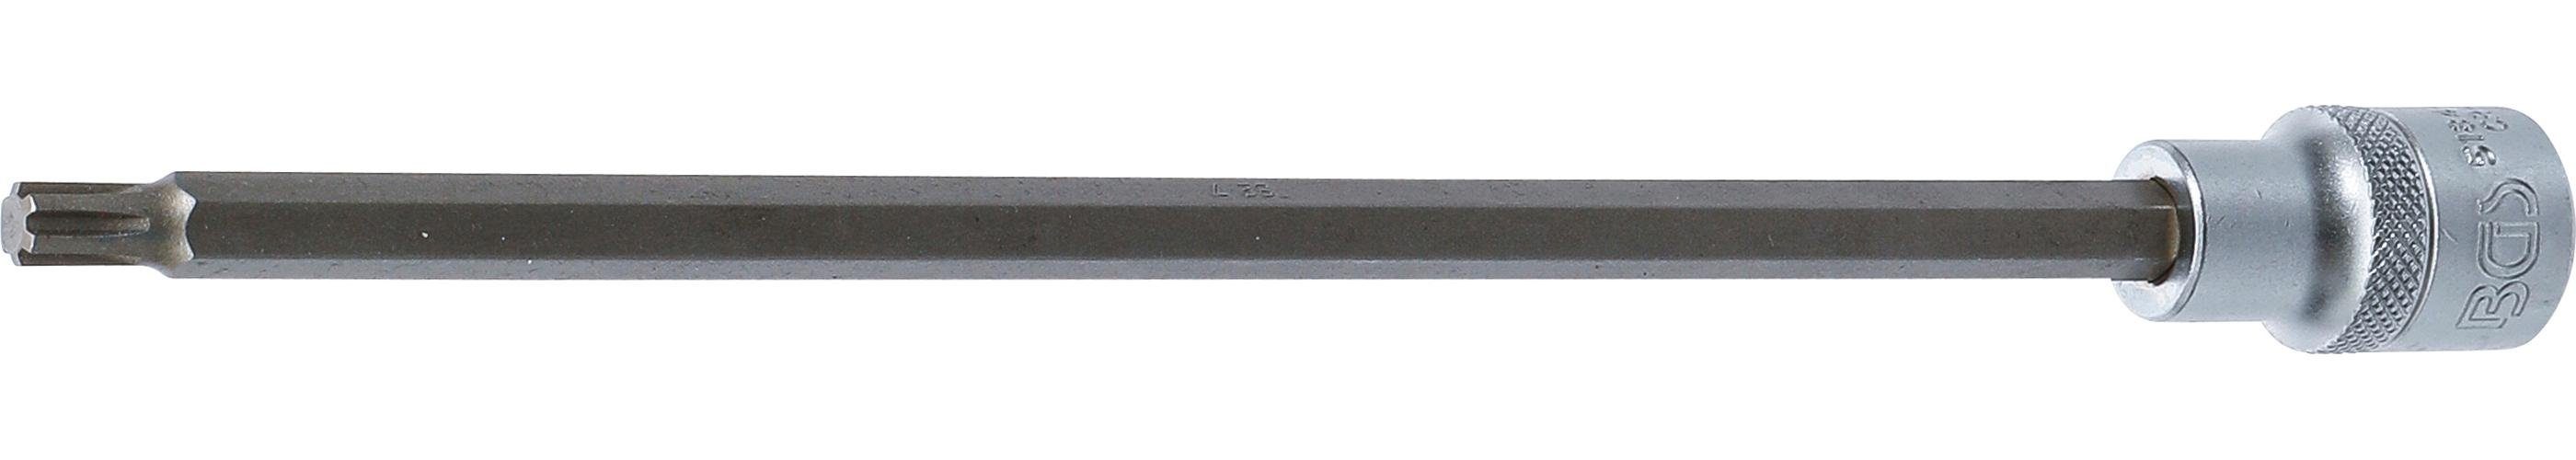 BGS technic Bit-Schraubendreher Bit-Einsatz, Länge 240 mm, Antrieb Innenvierkant 12,5 mm (1/2), Keil-Profil (für RIBE) M7